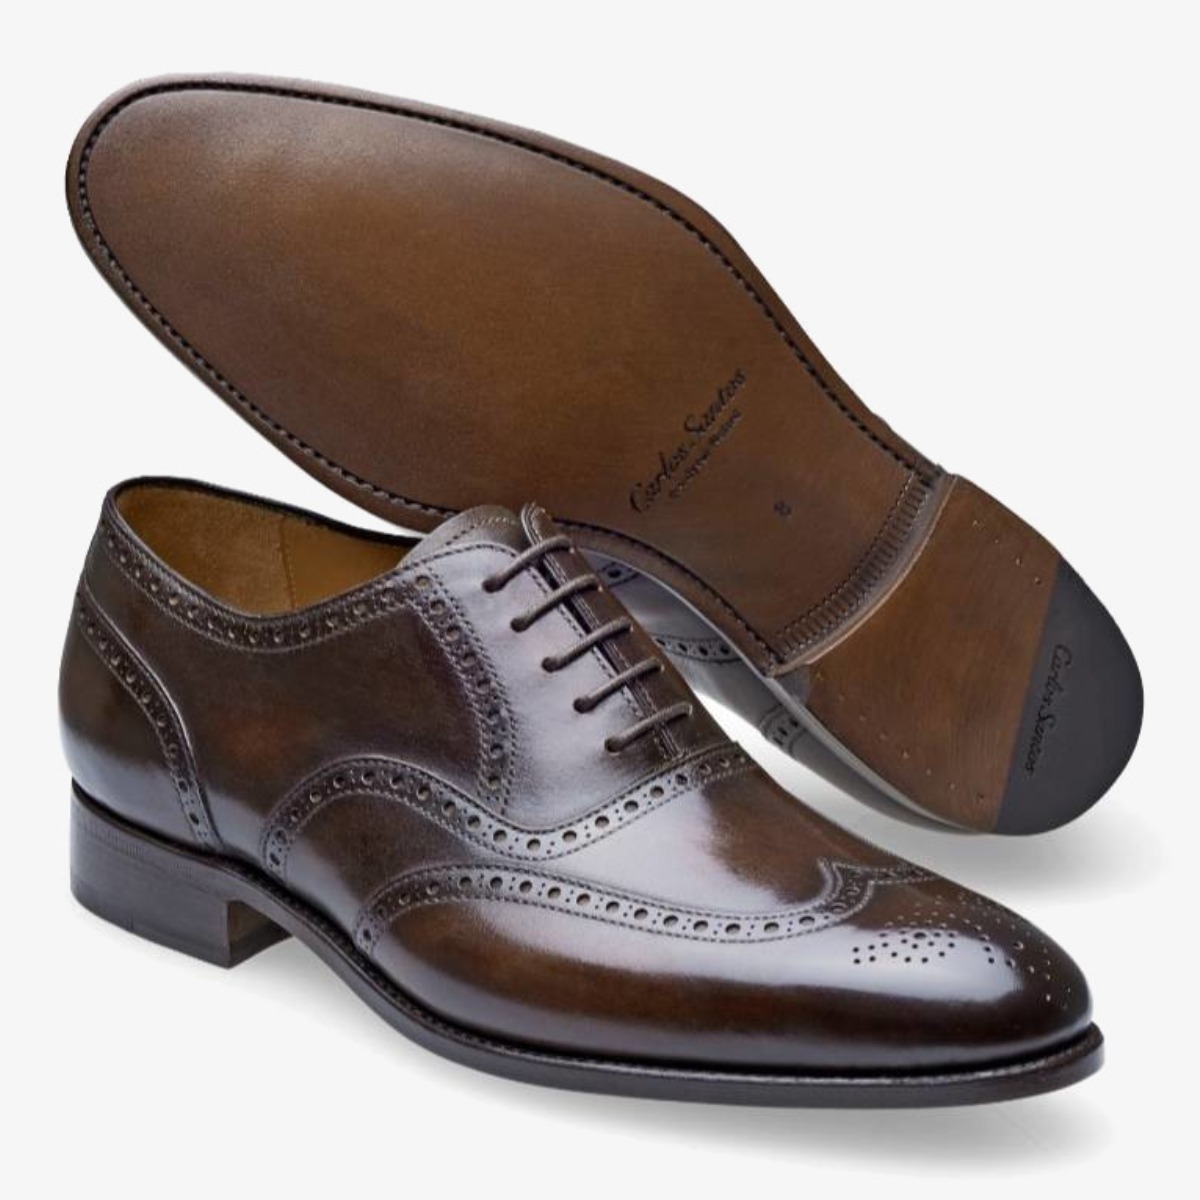 Carlos Santos 7273 Frank dark brown brogue men's oxford shoes